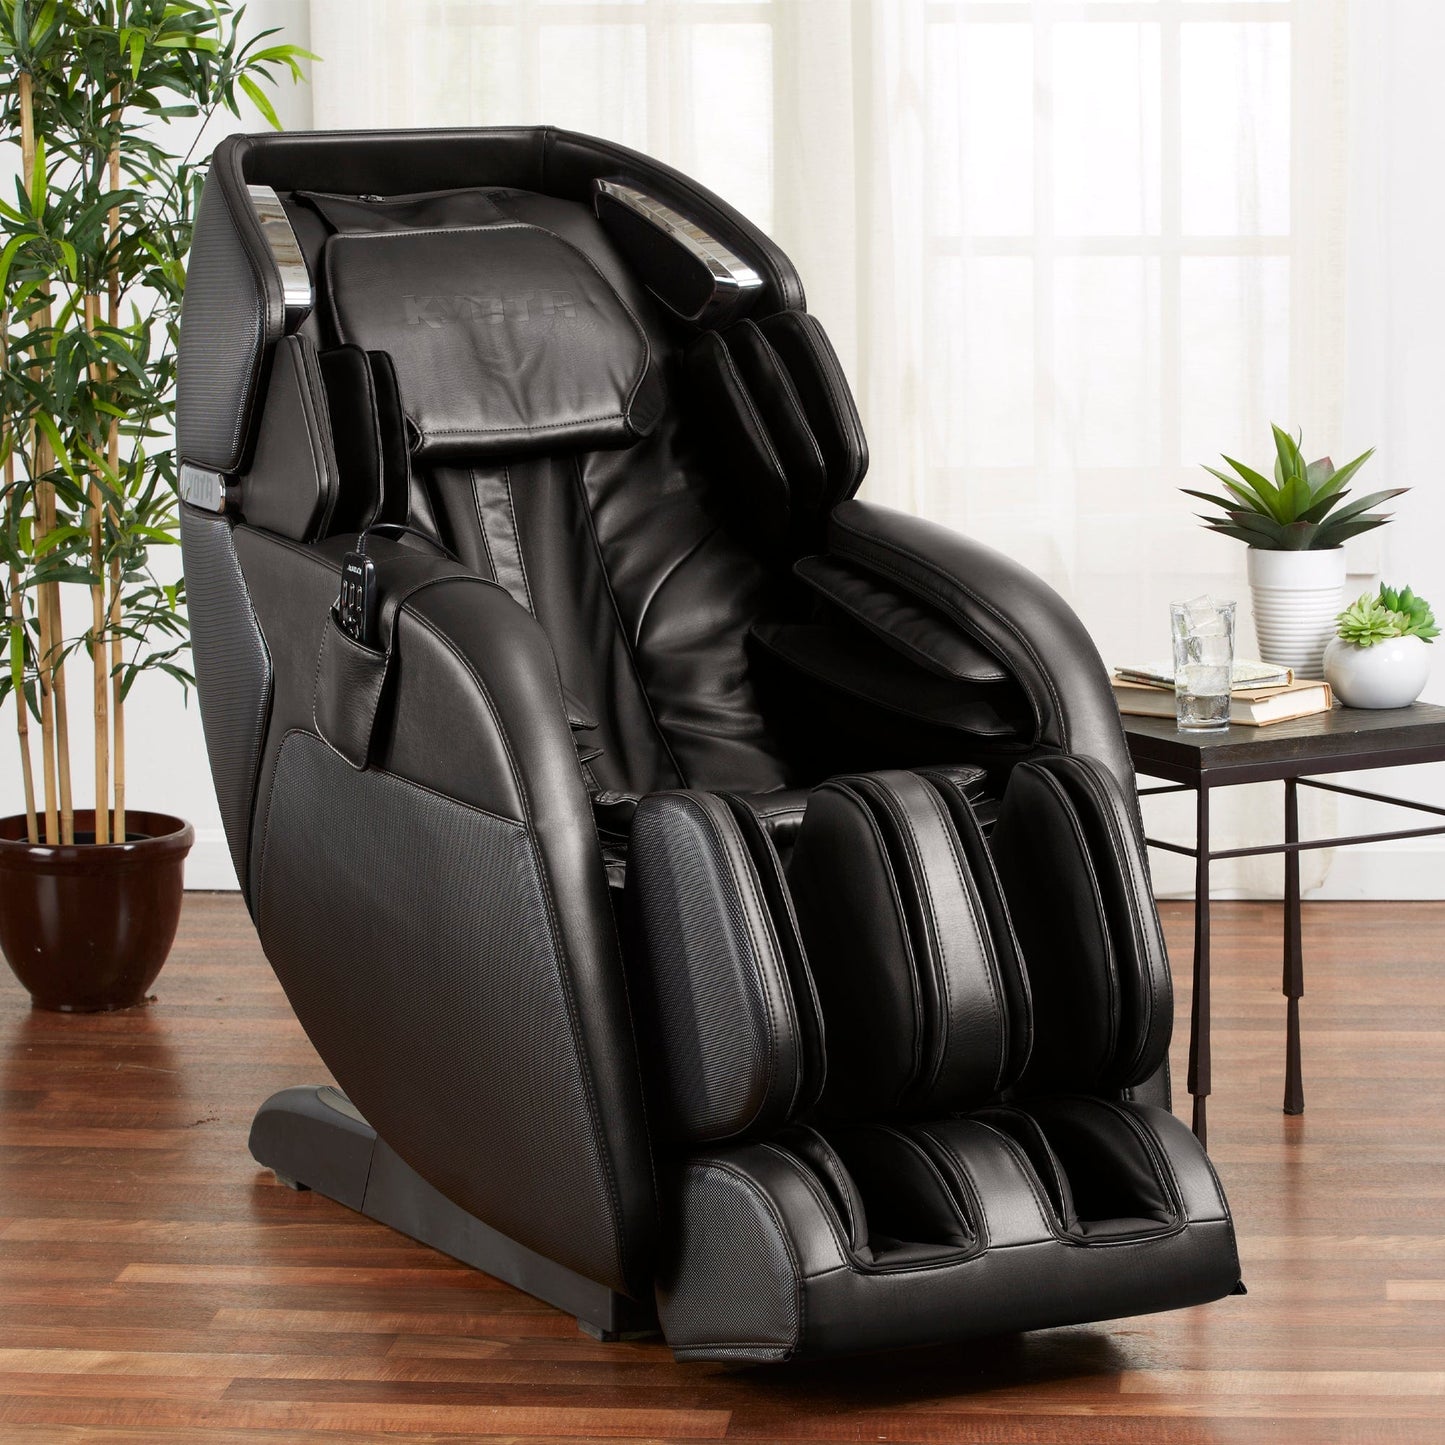 Kyota Massage Chairs Kyota Kenko M673 3D/4D Massage Chair